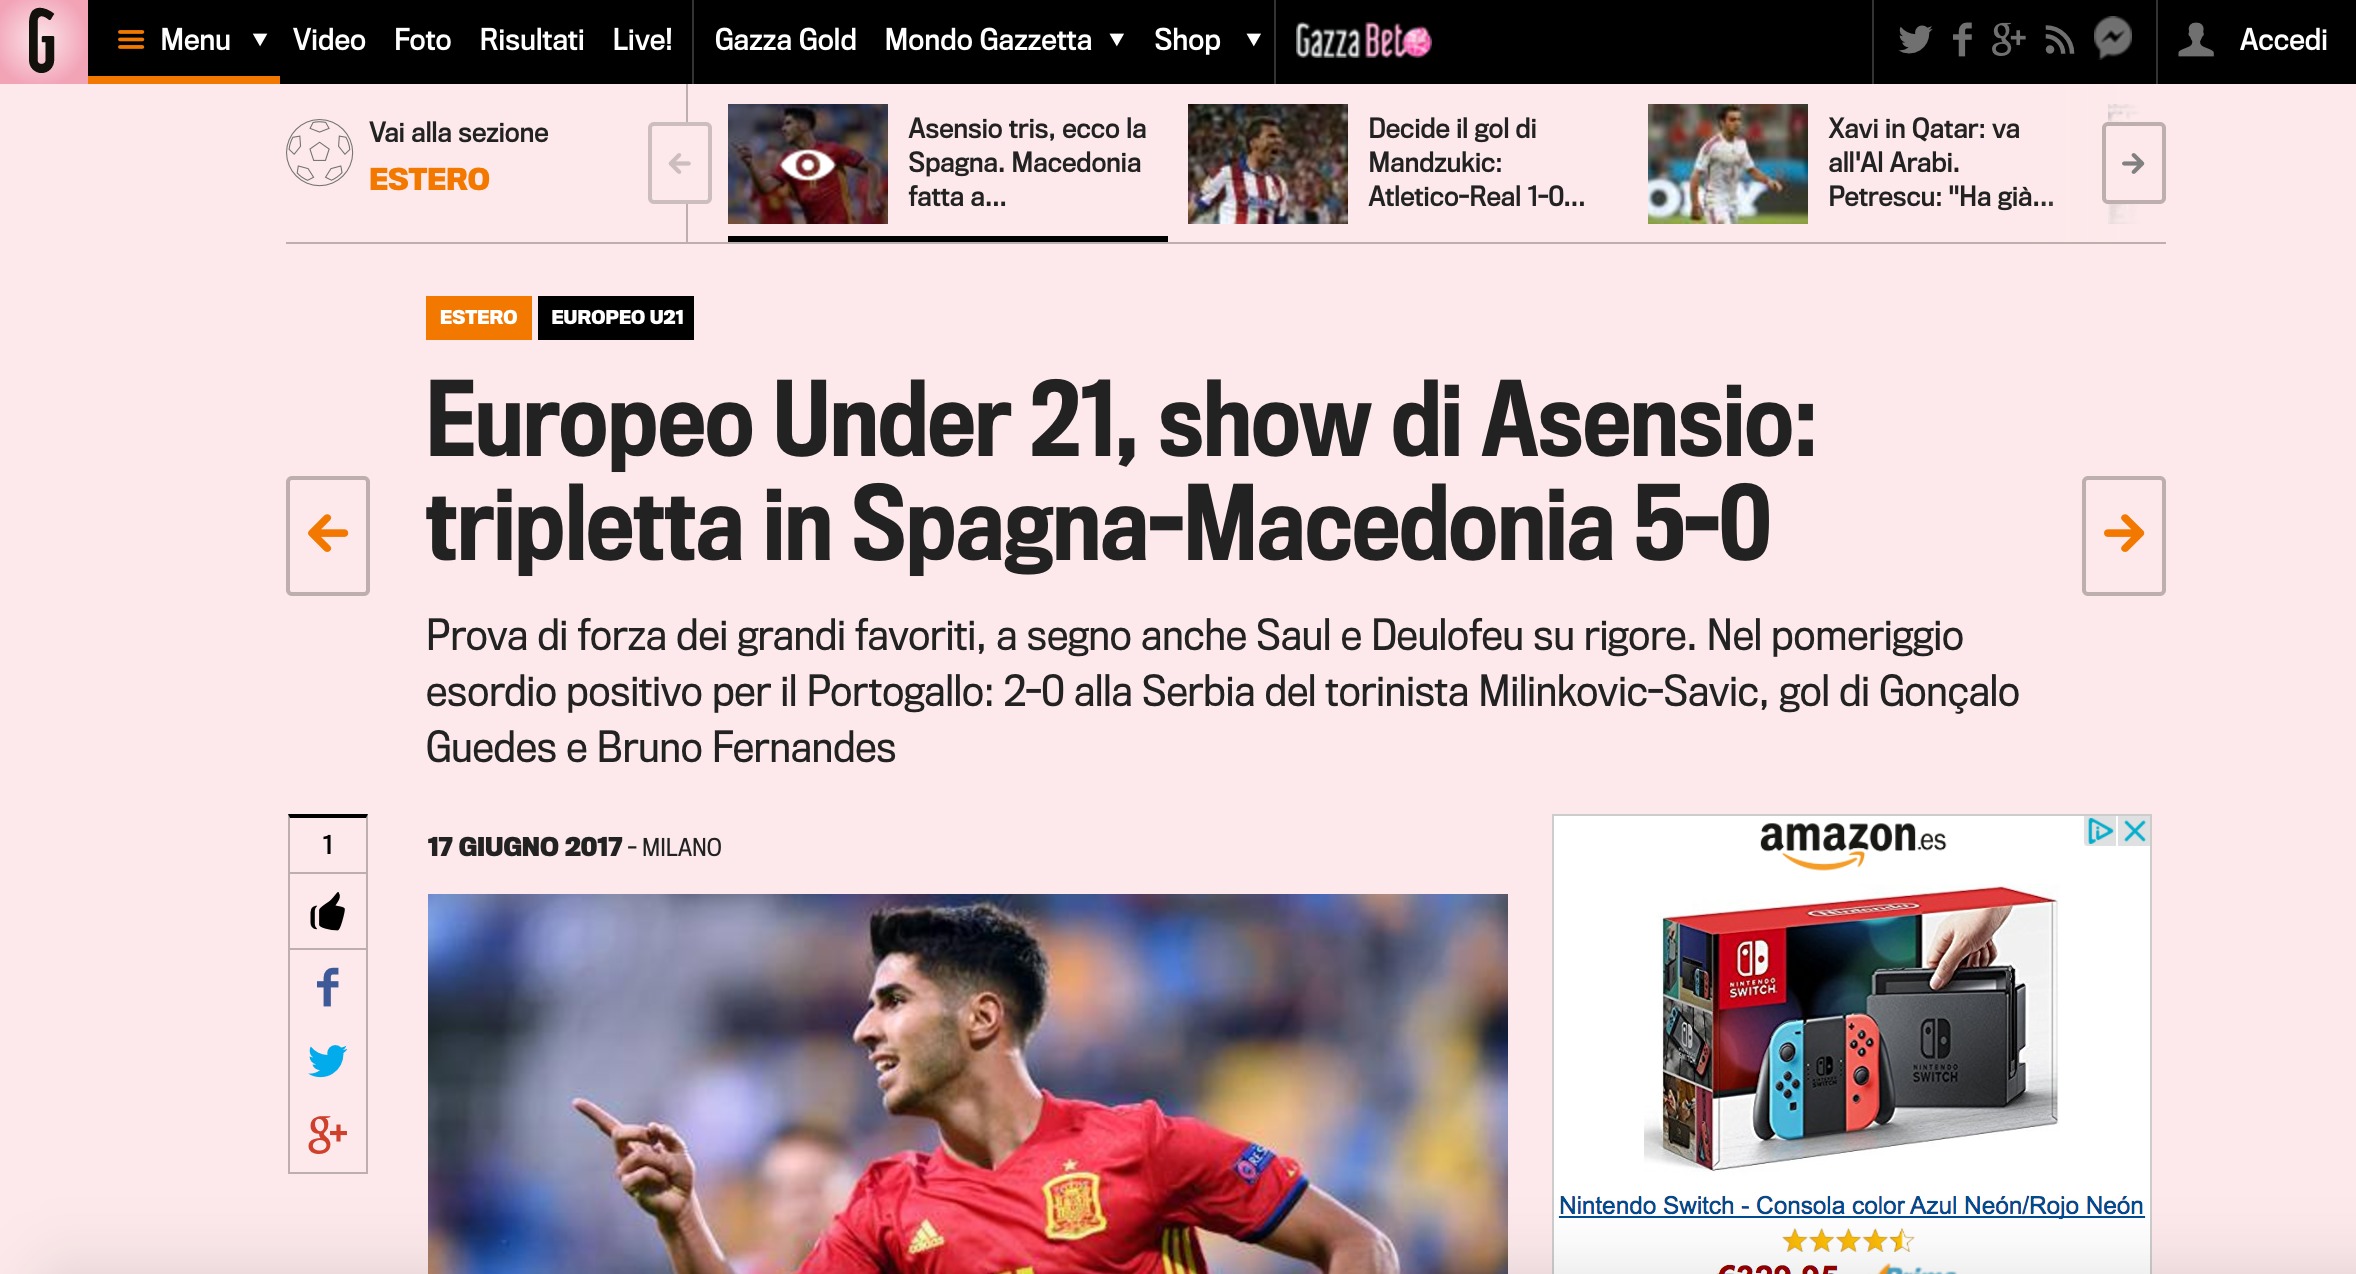 La Gazzetta dello sport habla de Asensio.